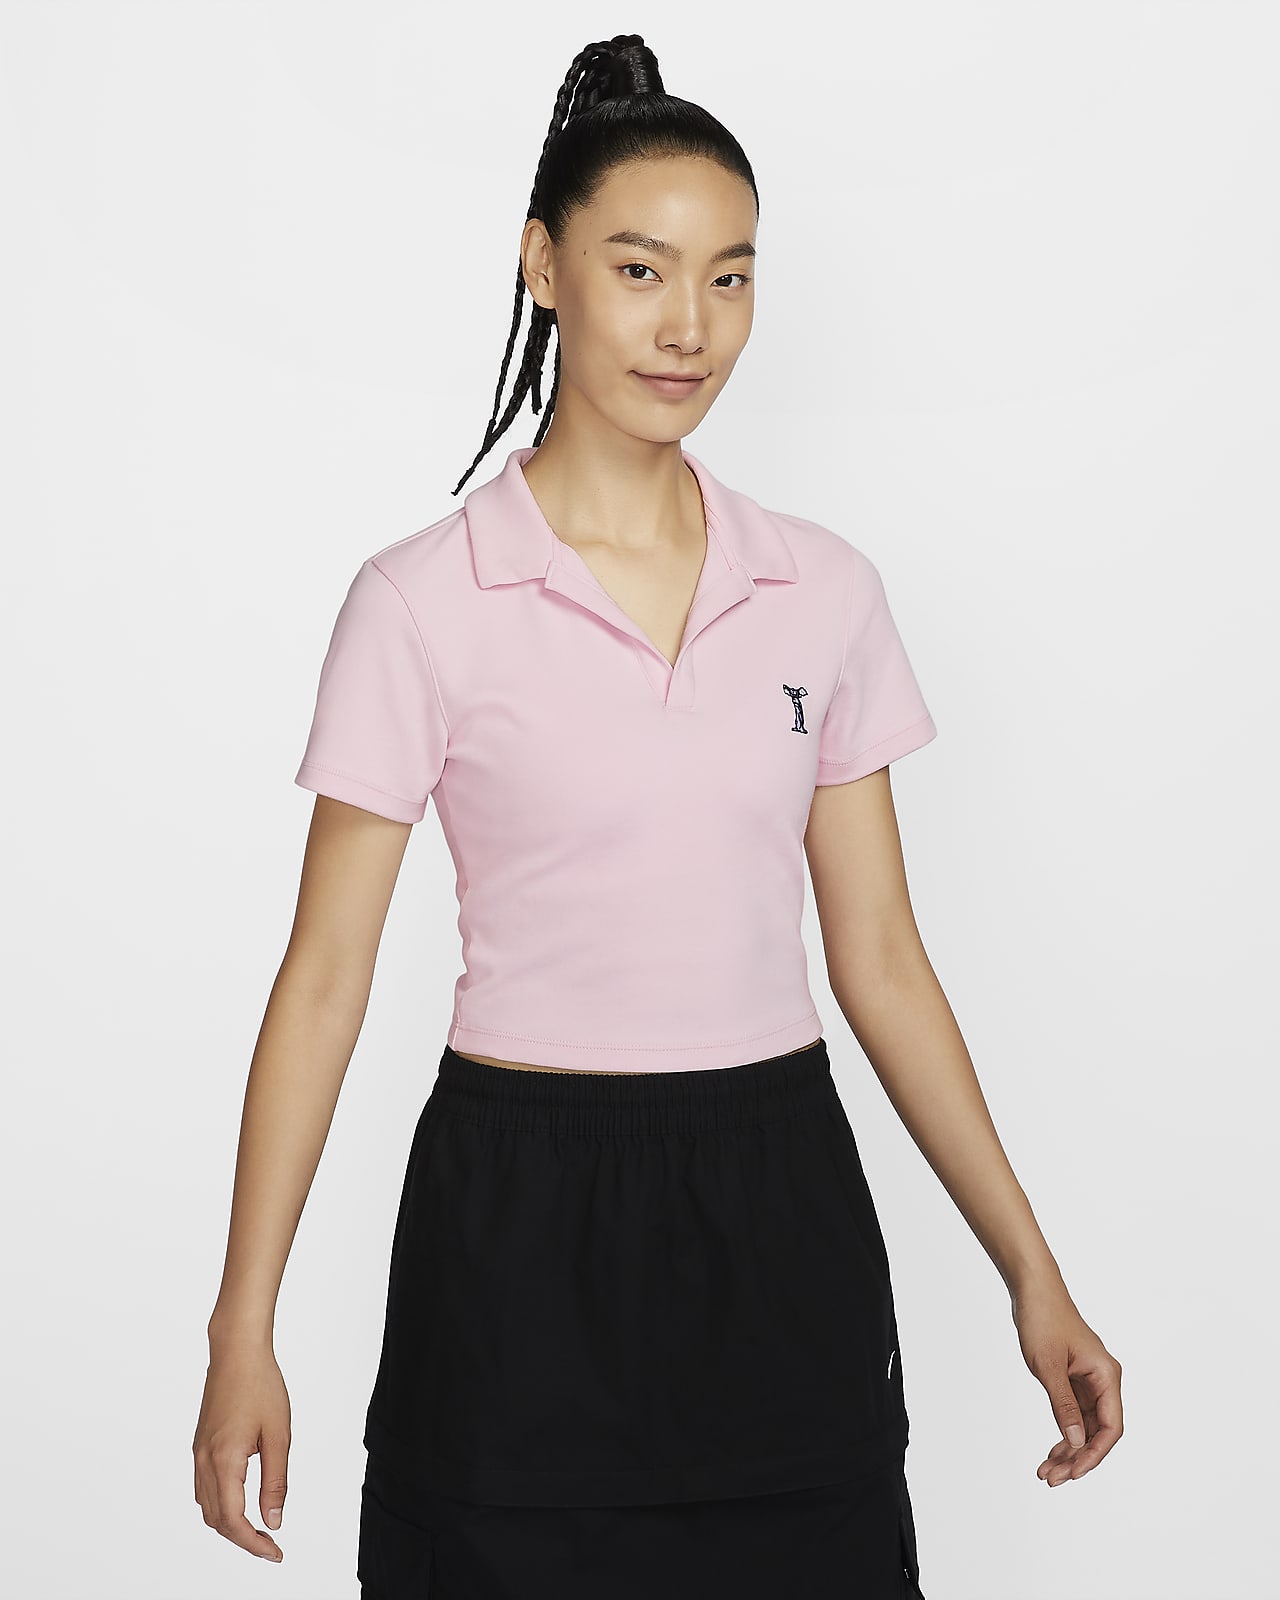 Nike Sportswear Women's Short-Sleeve Polo Top